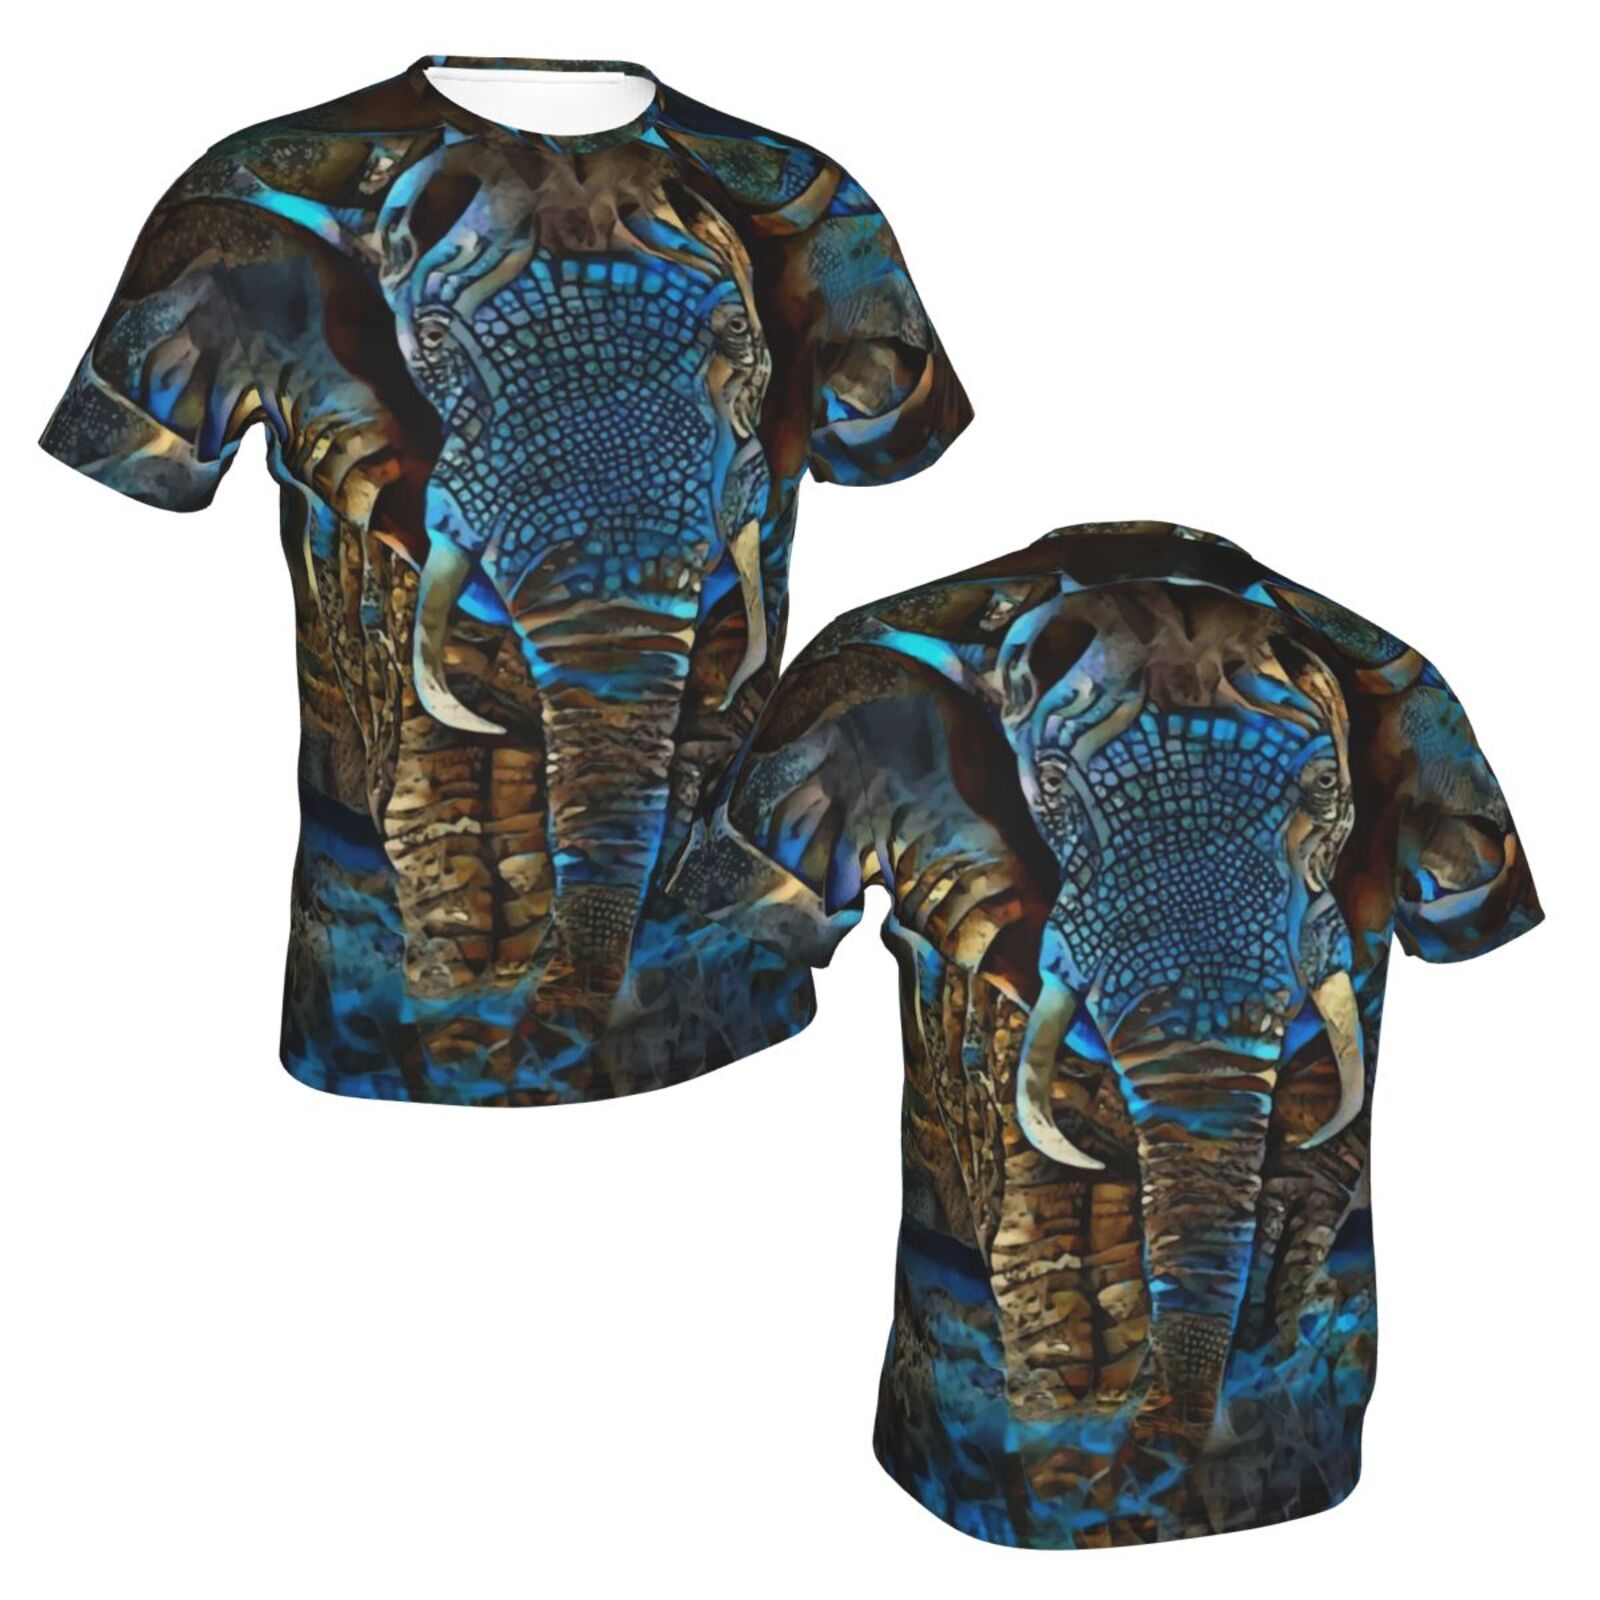 Elefant Braun Blau Medien Mischen Elemente Klassisch Belgien T-shirt